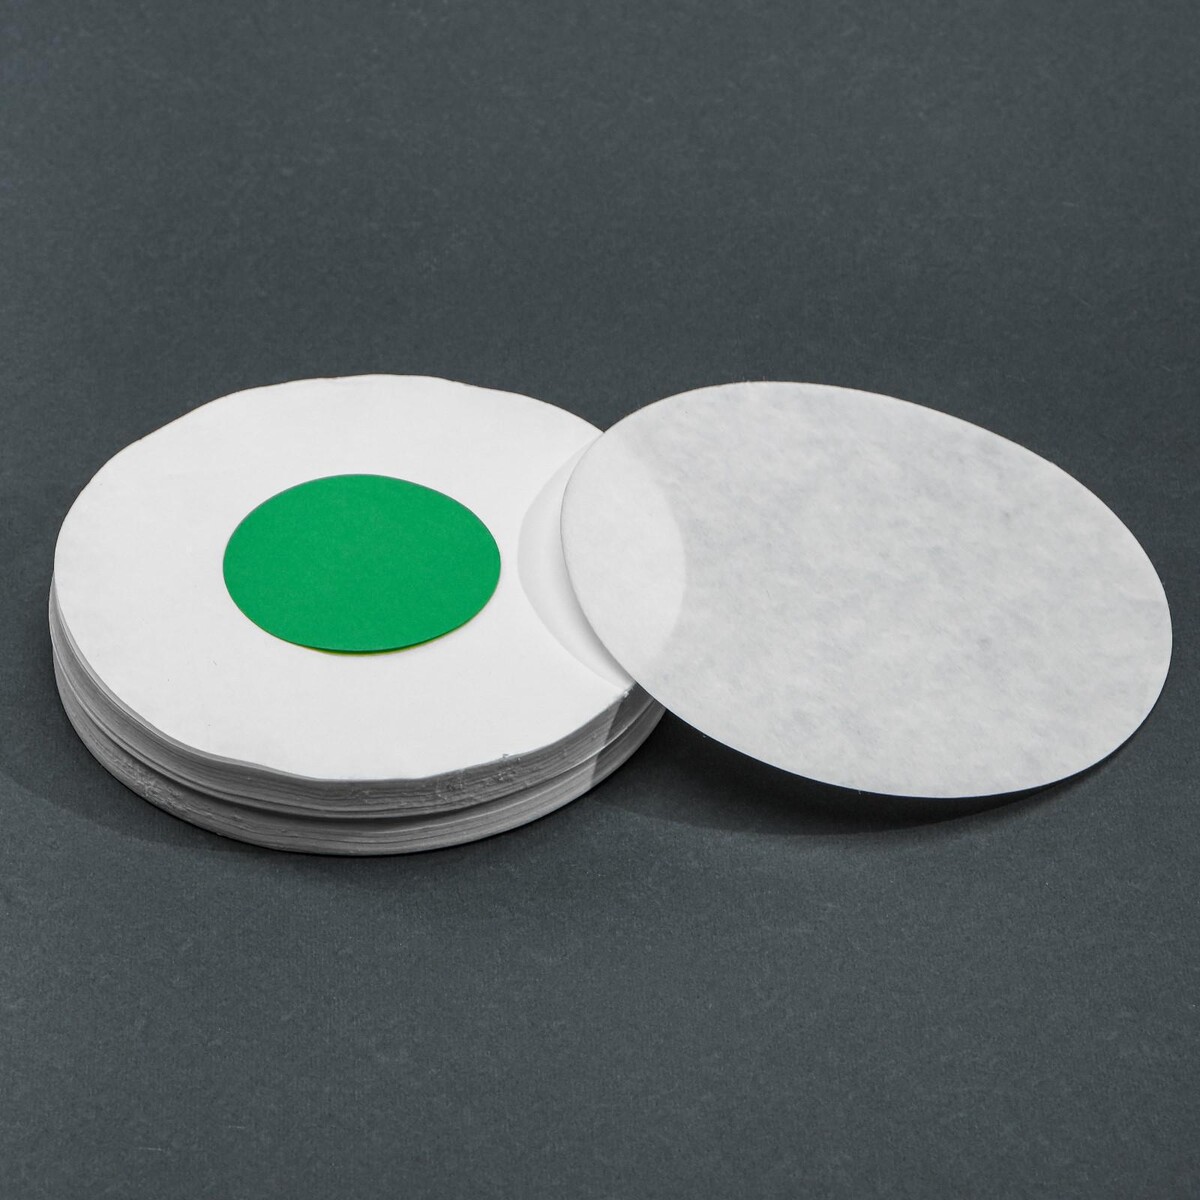 Фильтры d 125 мм, зеленая лента, марка фмм, очень медленной фильтрации, набор 100 шт набор для игры в бадминтон 2воланчика зеленая и желтая ракетка 55см